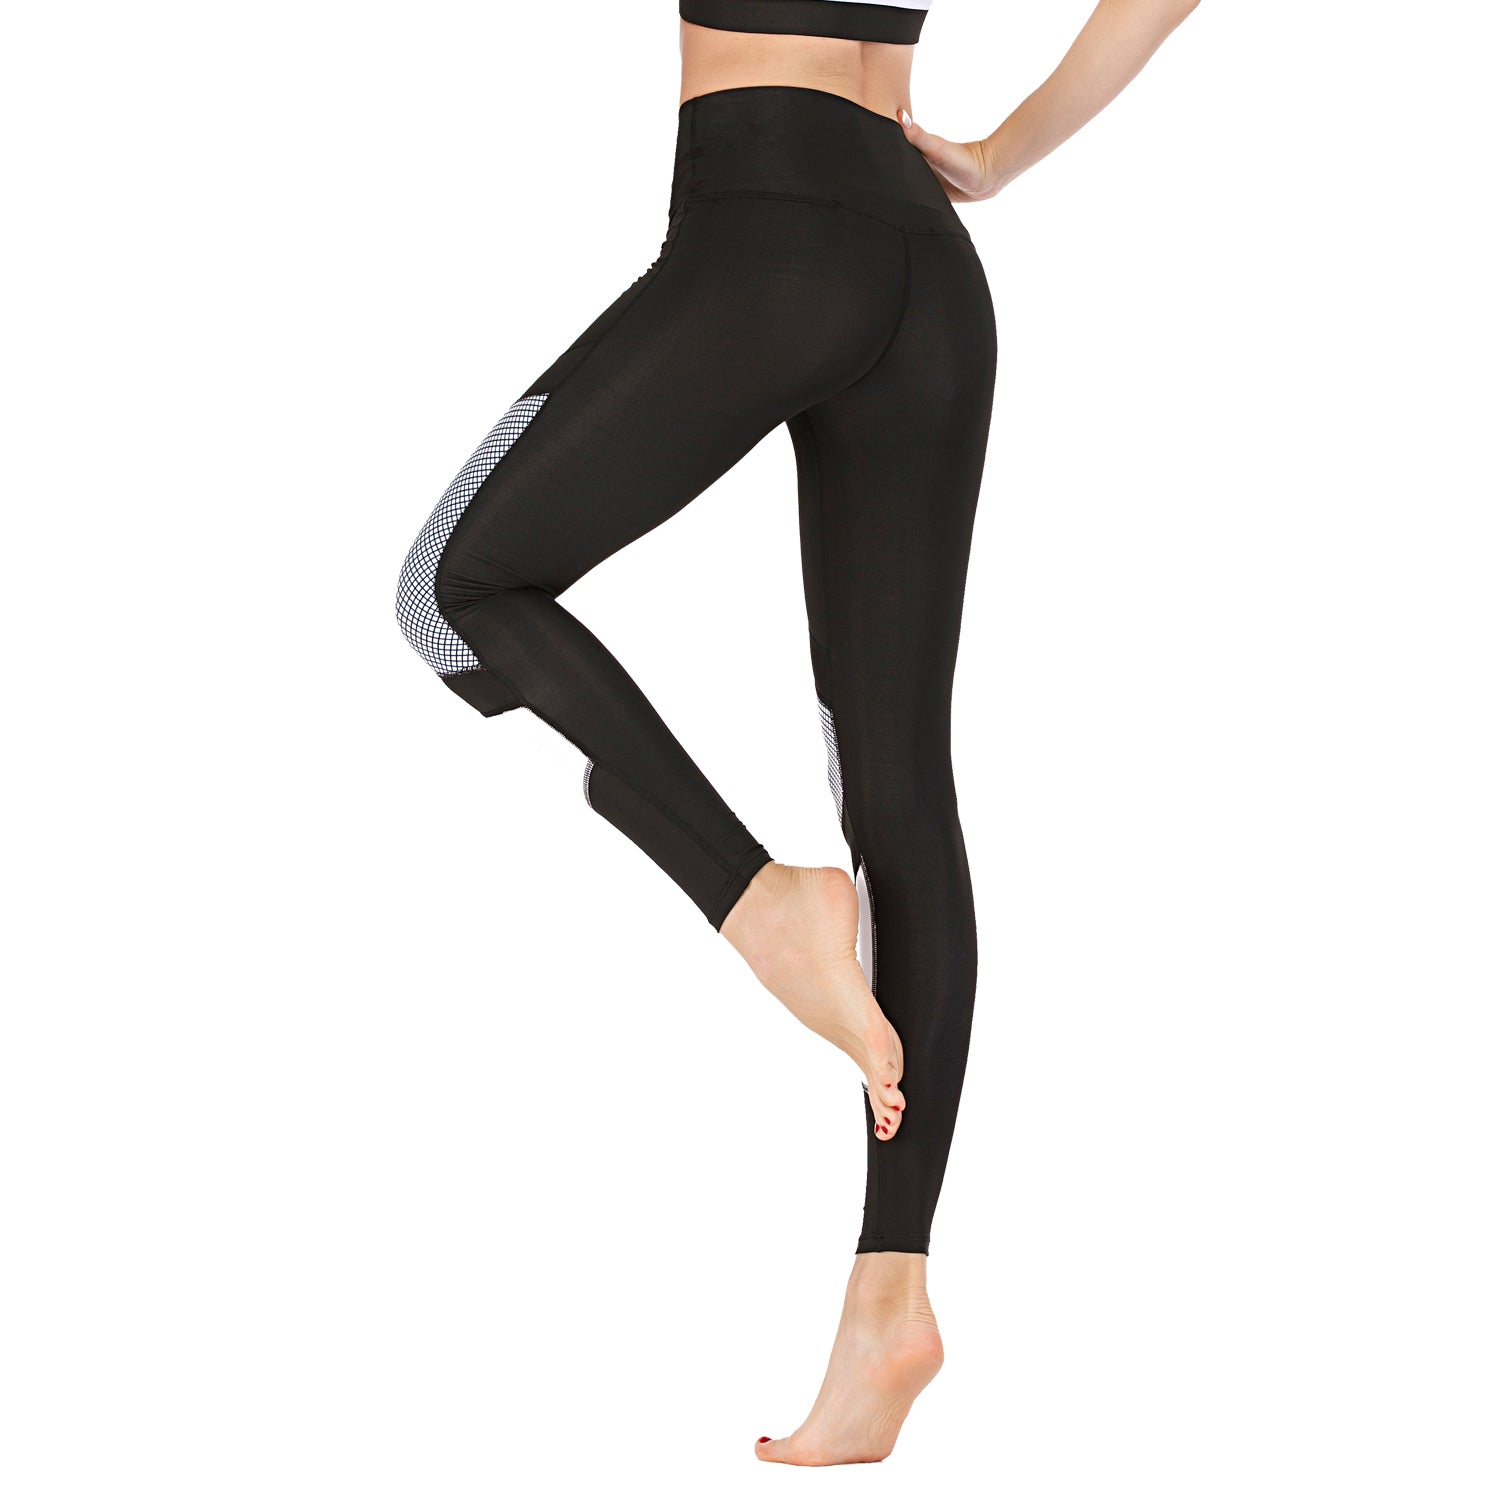 High Waist Leggings Black Squat Proof Yoga Pants